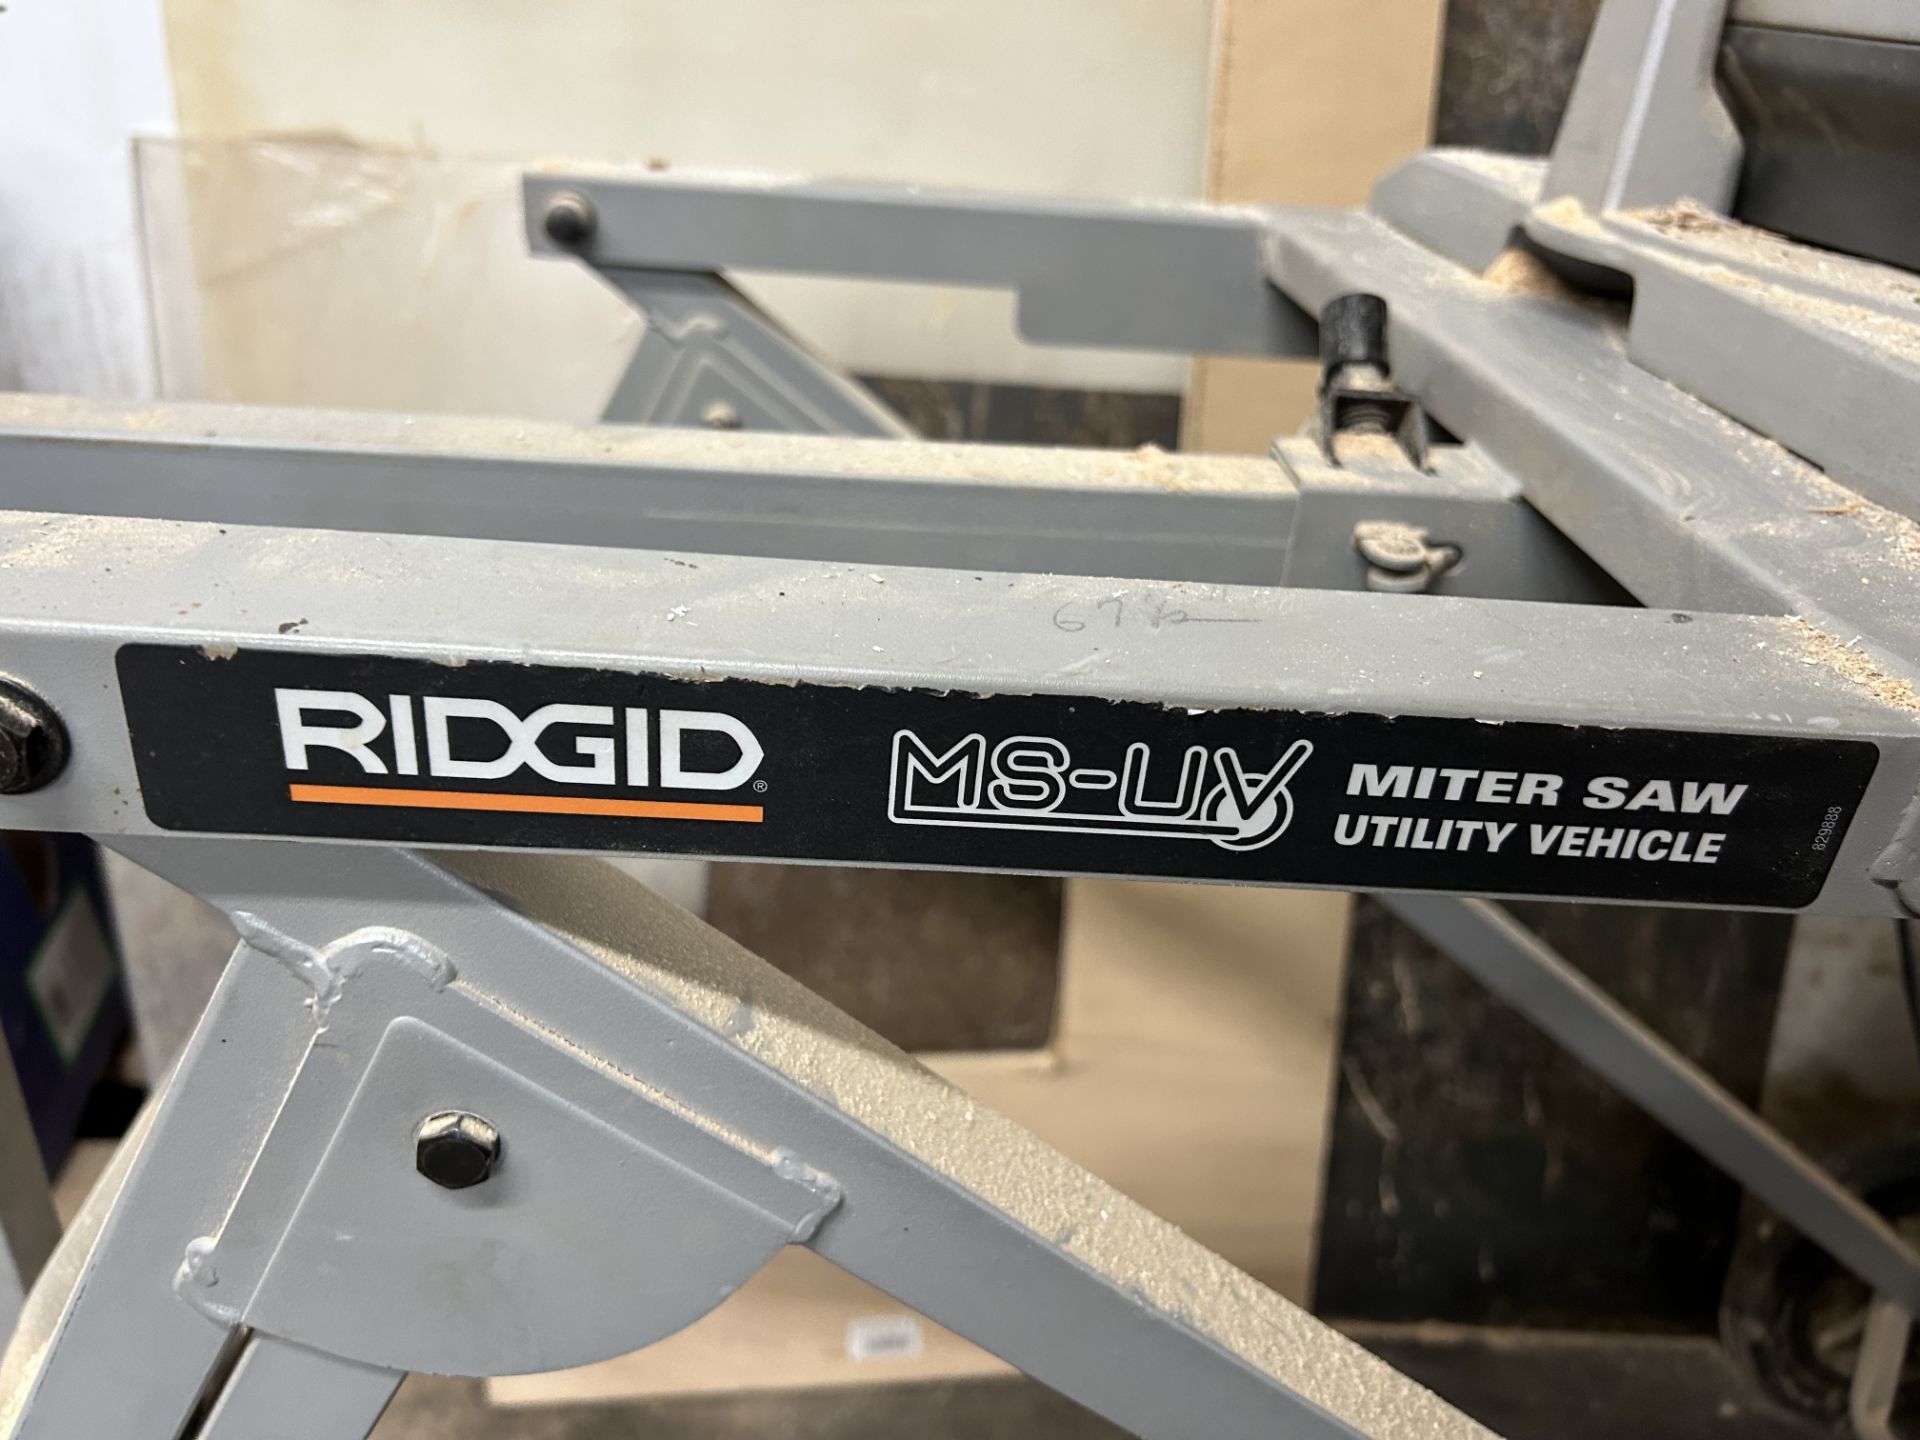 Rigid MS-UV Miter Saw, Model #MS1290LZ, S/N #U051180155 - Image 4 of 6